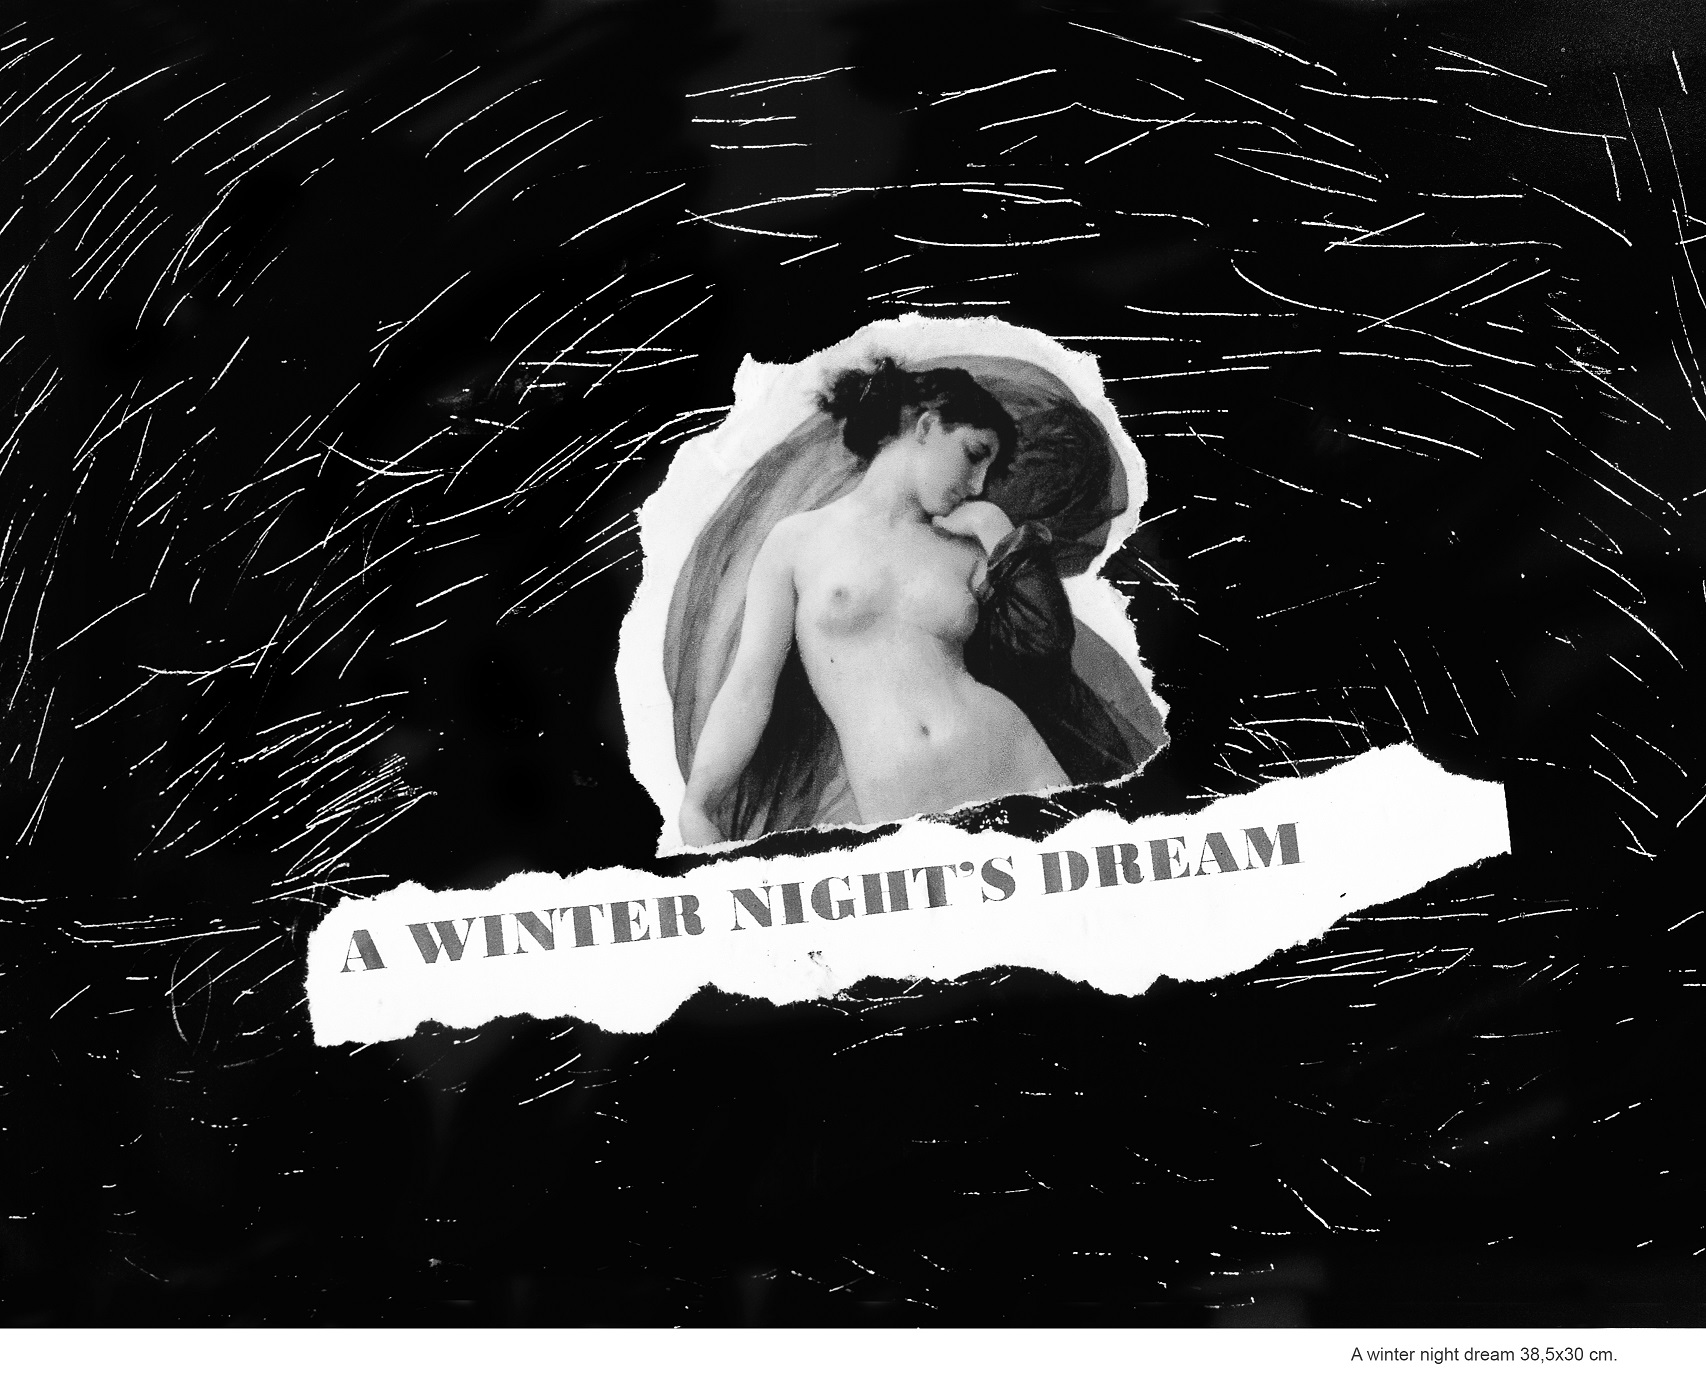 A winter night’s dream 2